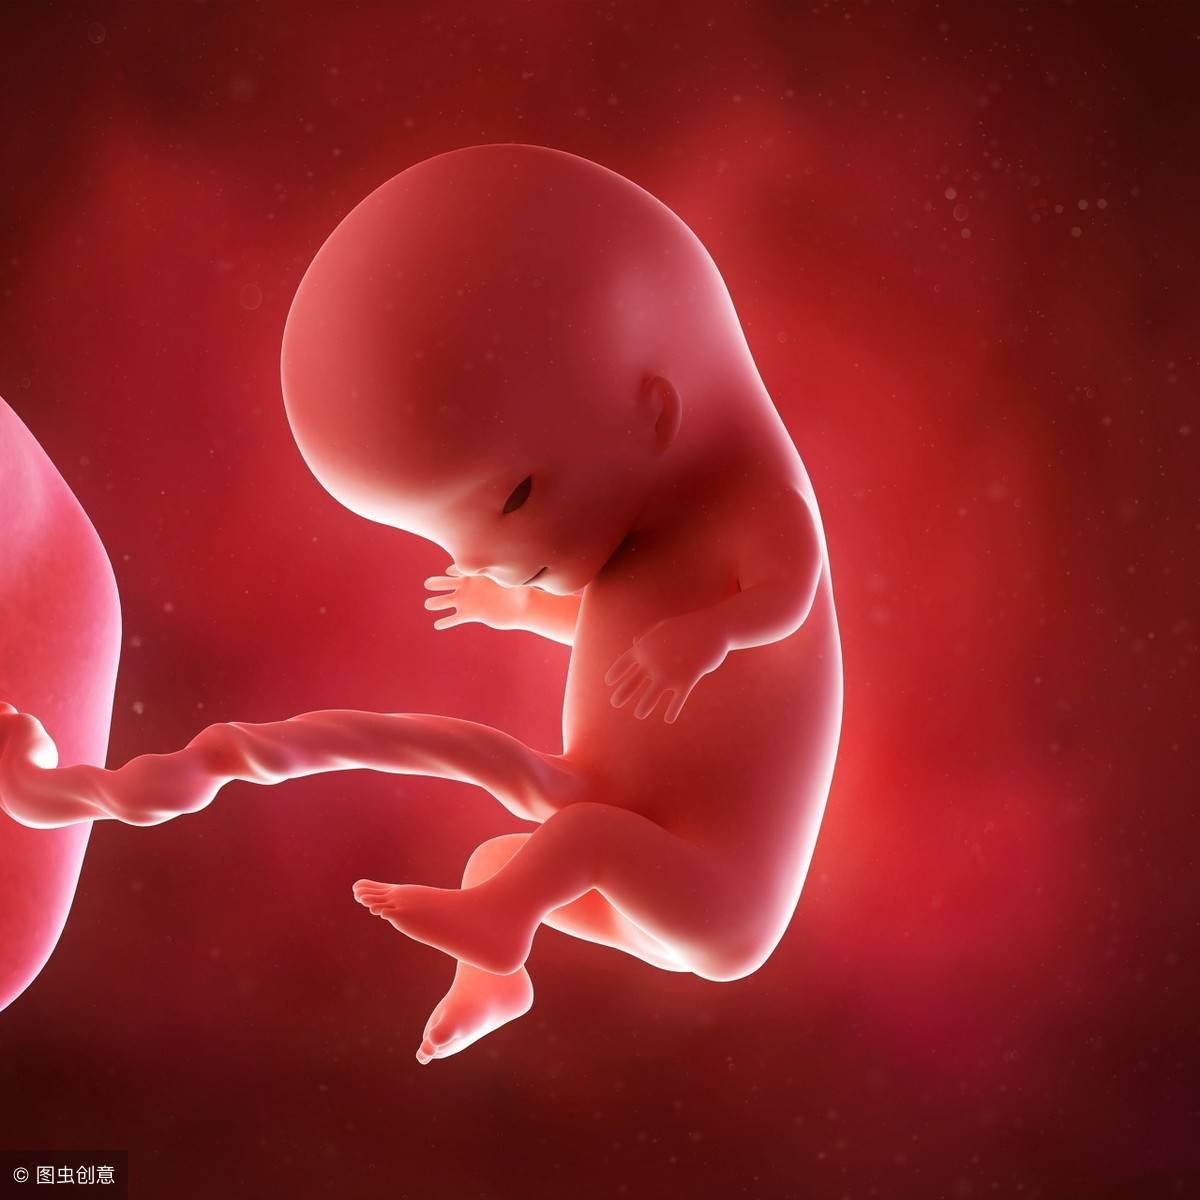 孕周胎儿发育对照图-图库-五毛网